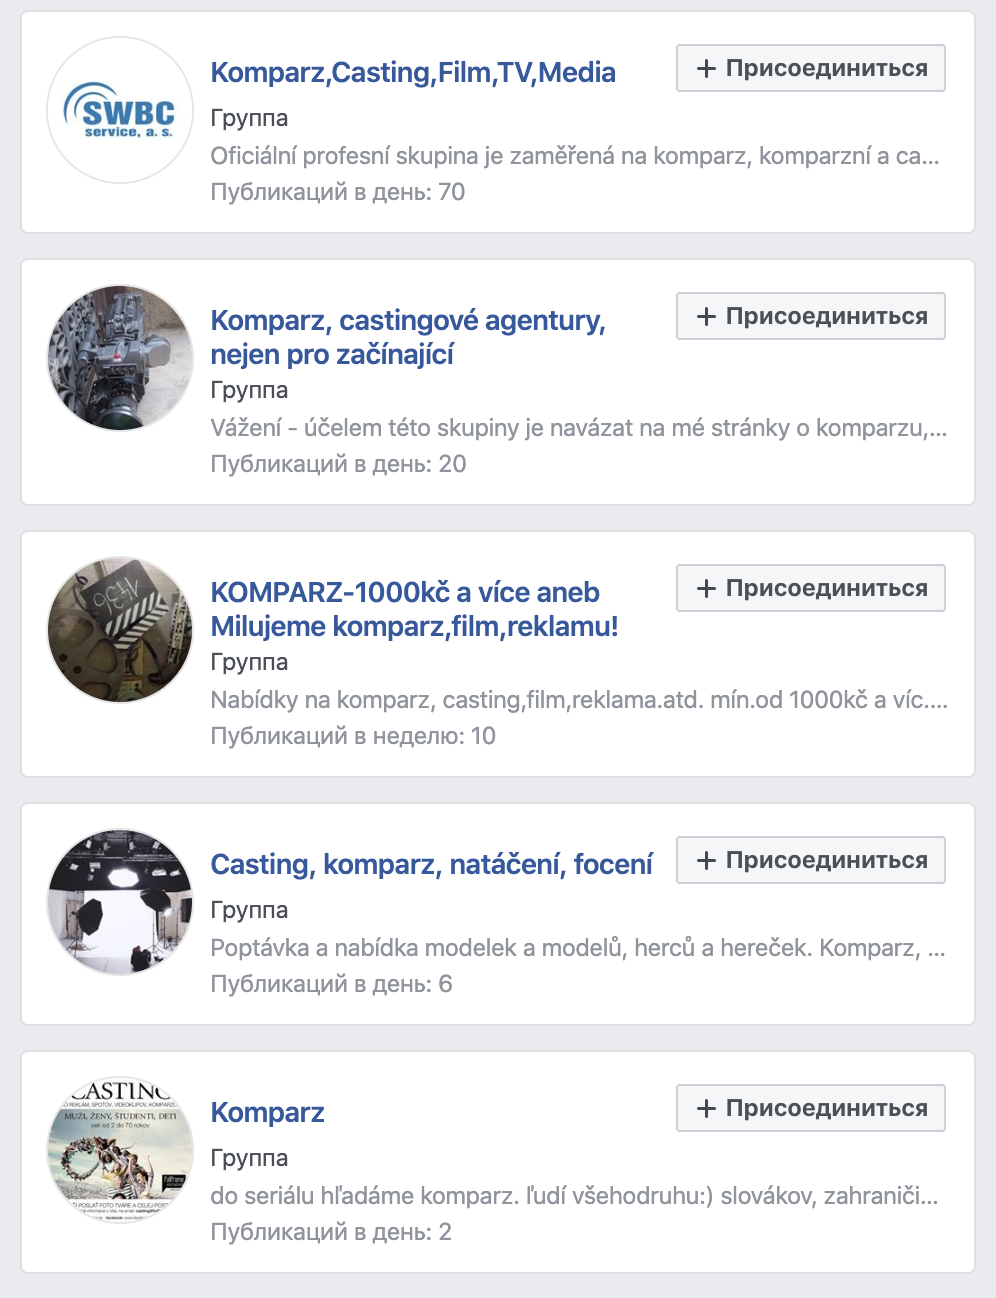 Если забить в поиск на Фейсбуке «komparz praha», находится десяток специализированных групп